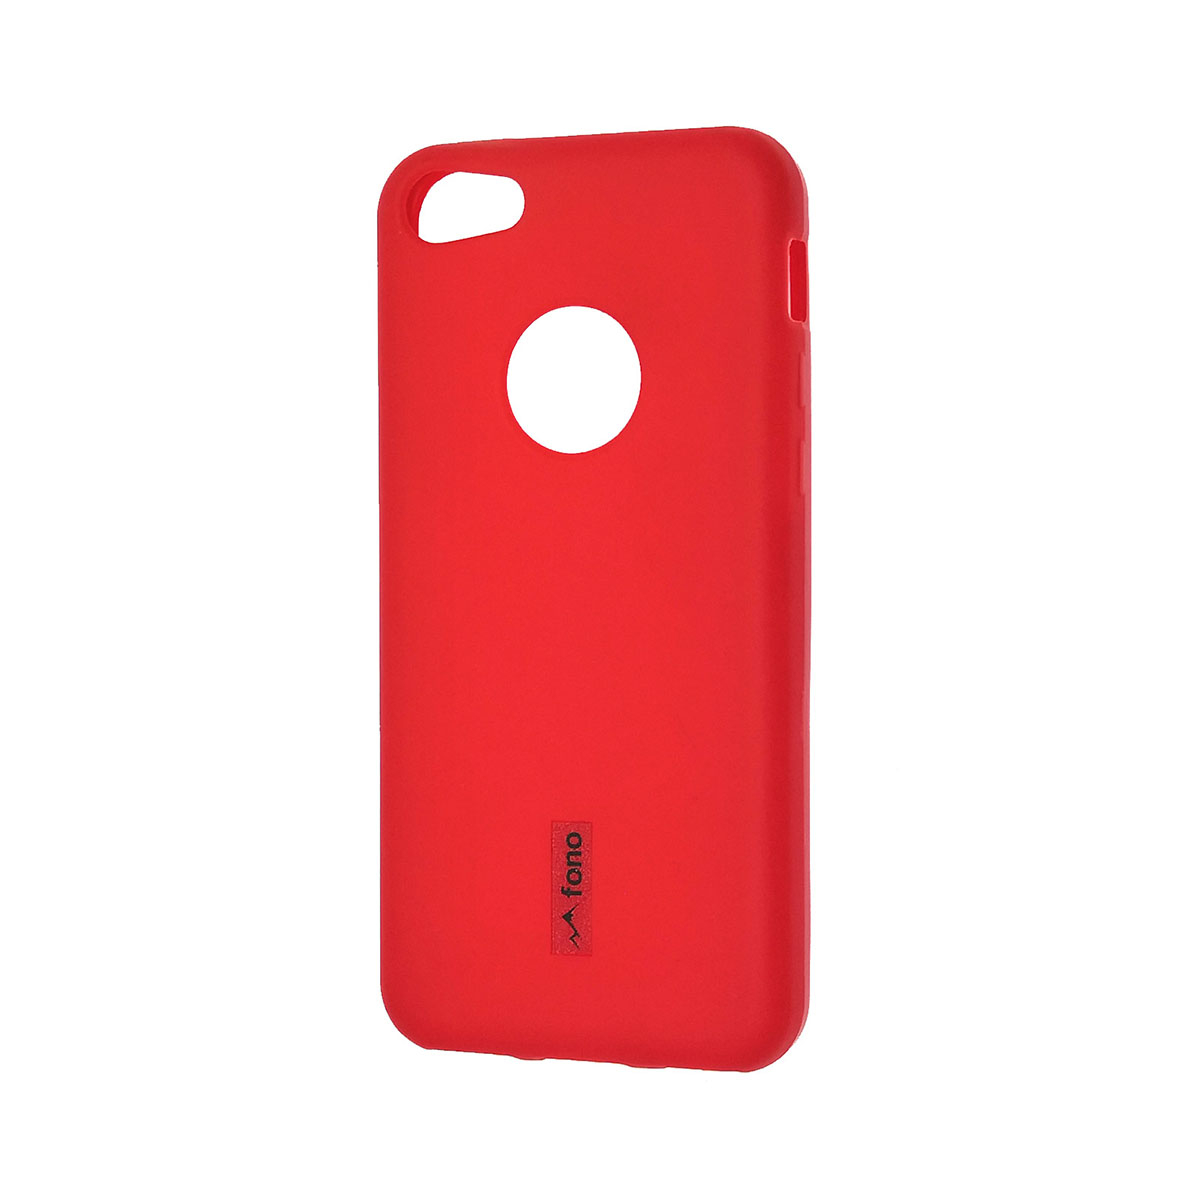 Чехол накладка FONO для APPLE iPhone 5C, силикон, защитная пленка, цвет красный.